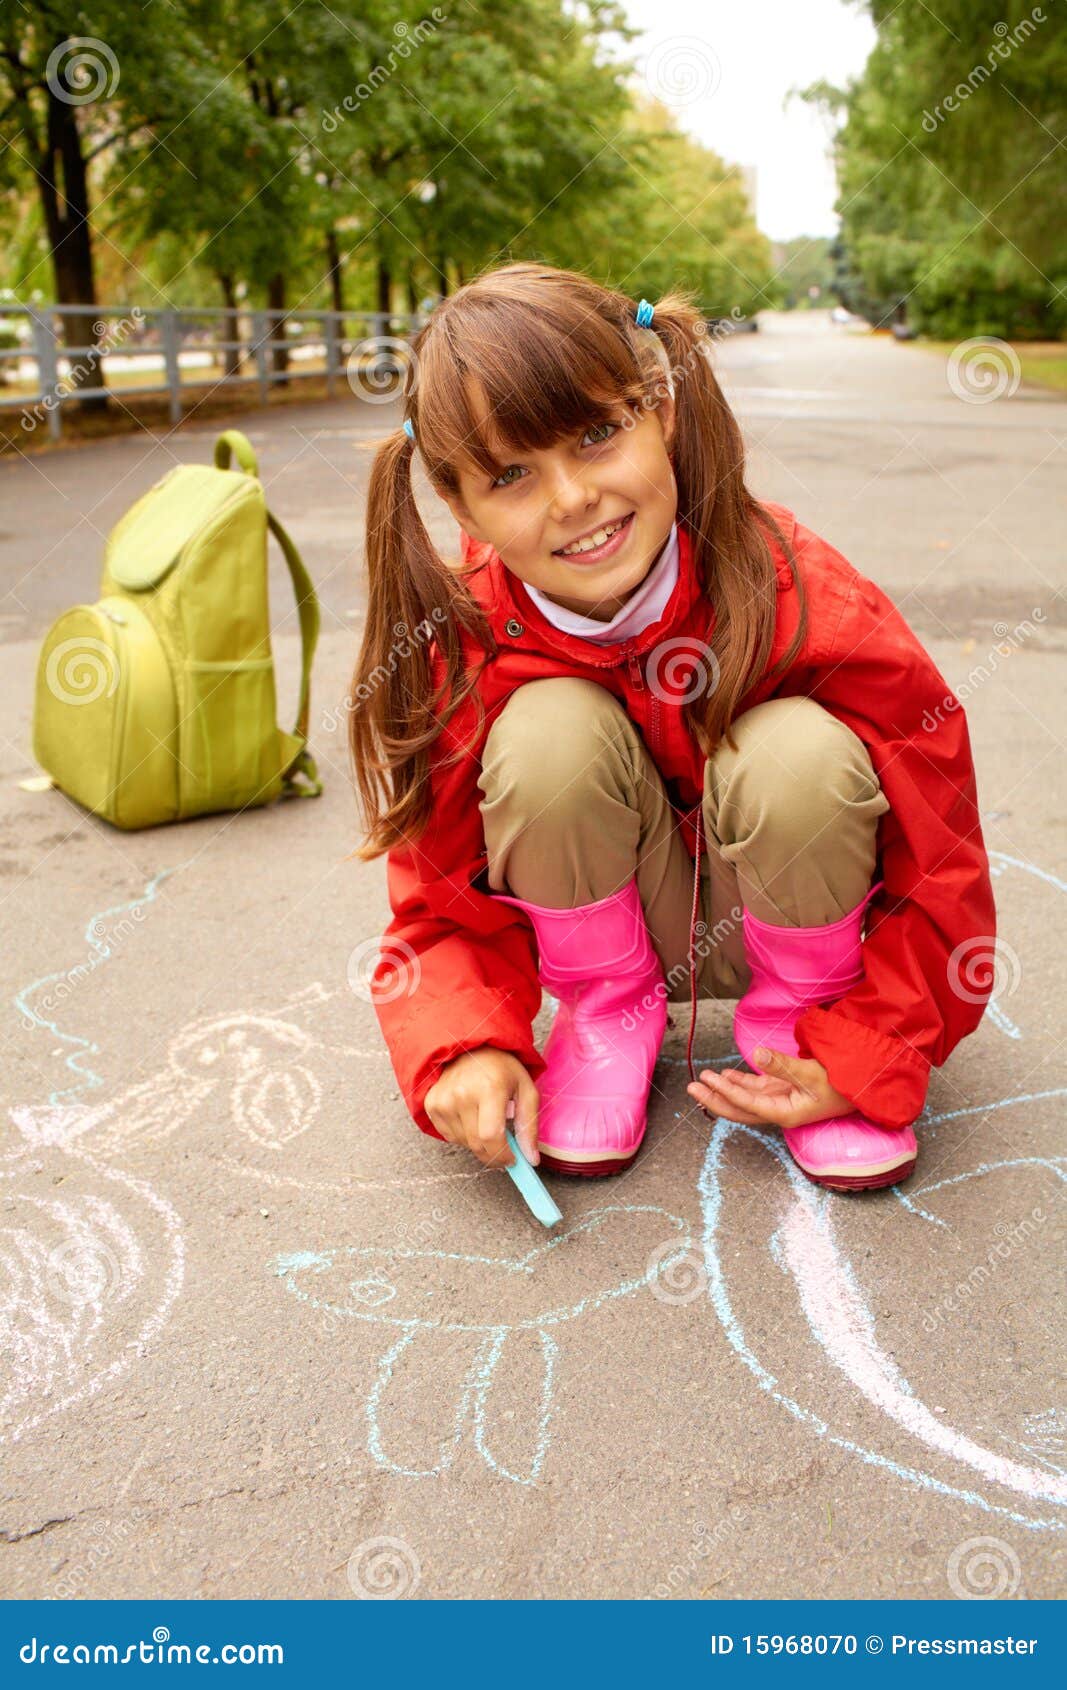 Девушка пошла пописать. Девочка с мелками. Маленькие девочки на детской площадке. Девочка присела. Подростки рисуют на асфальте.